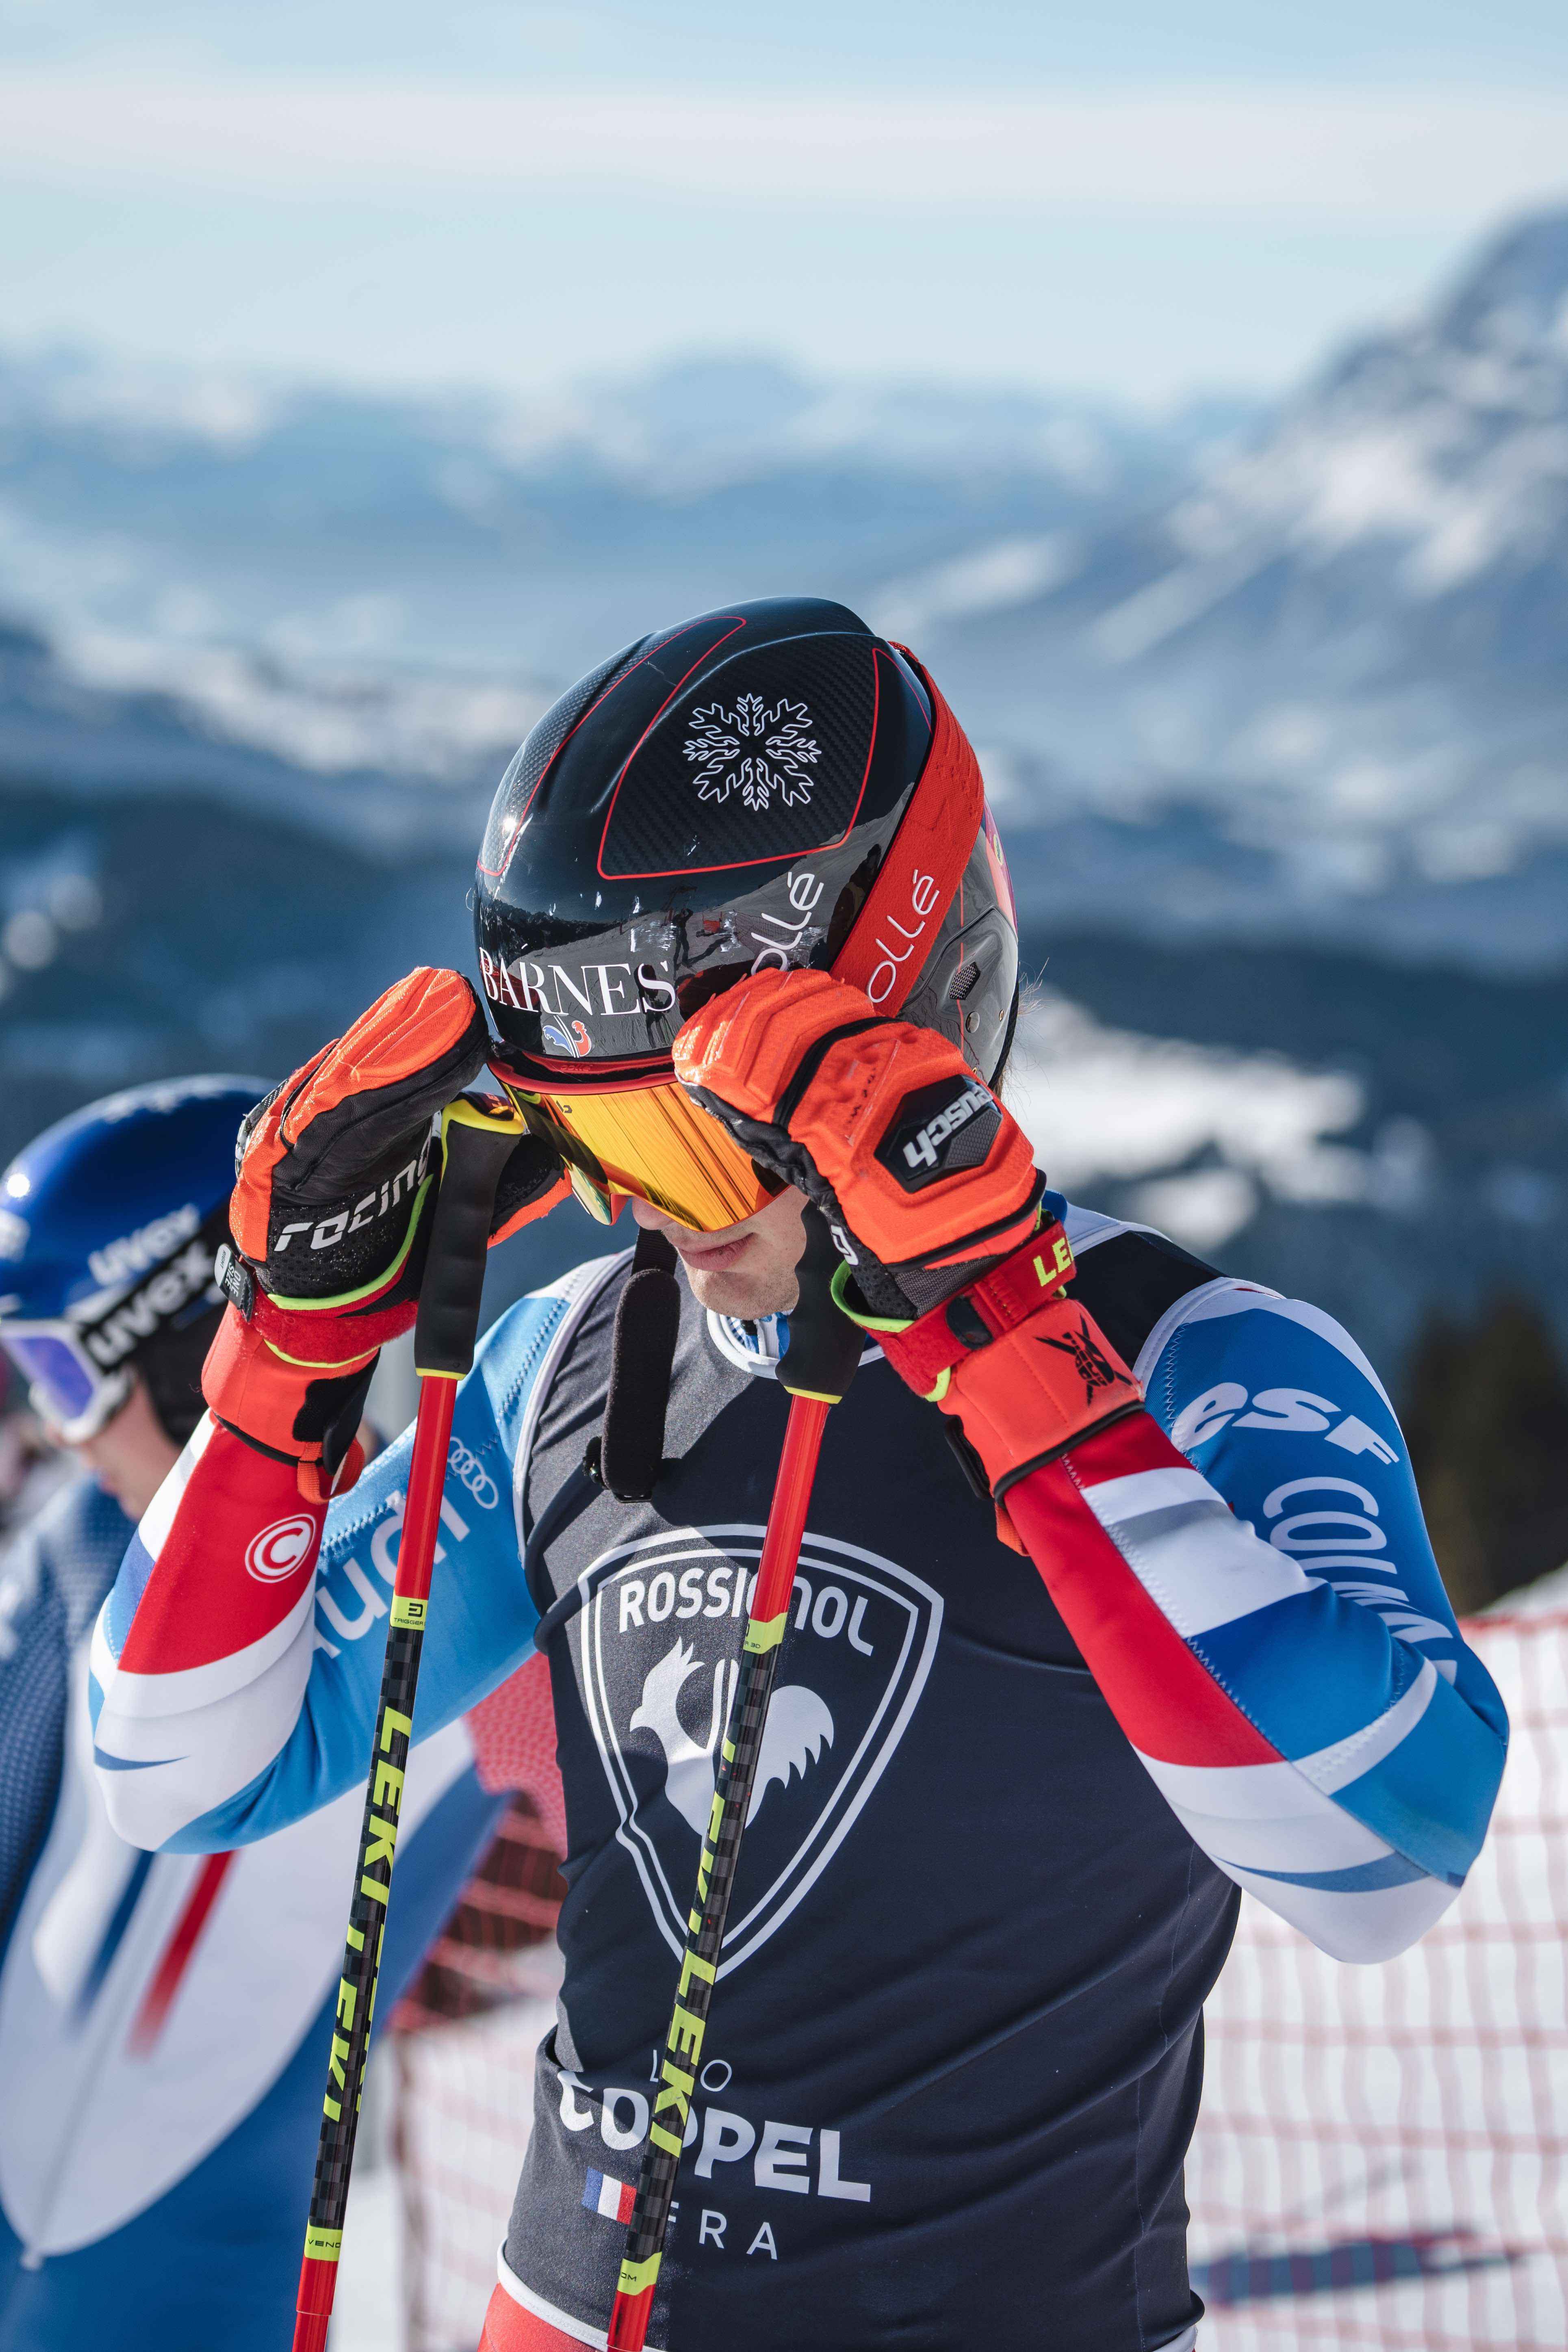 Leo COPPEL - Championnat du monde junior / Ski alpin 